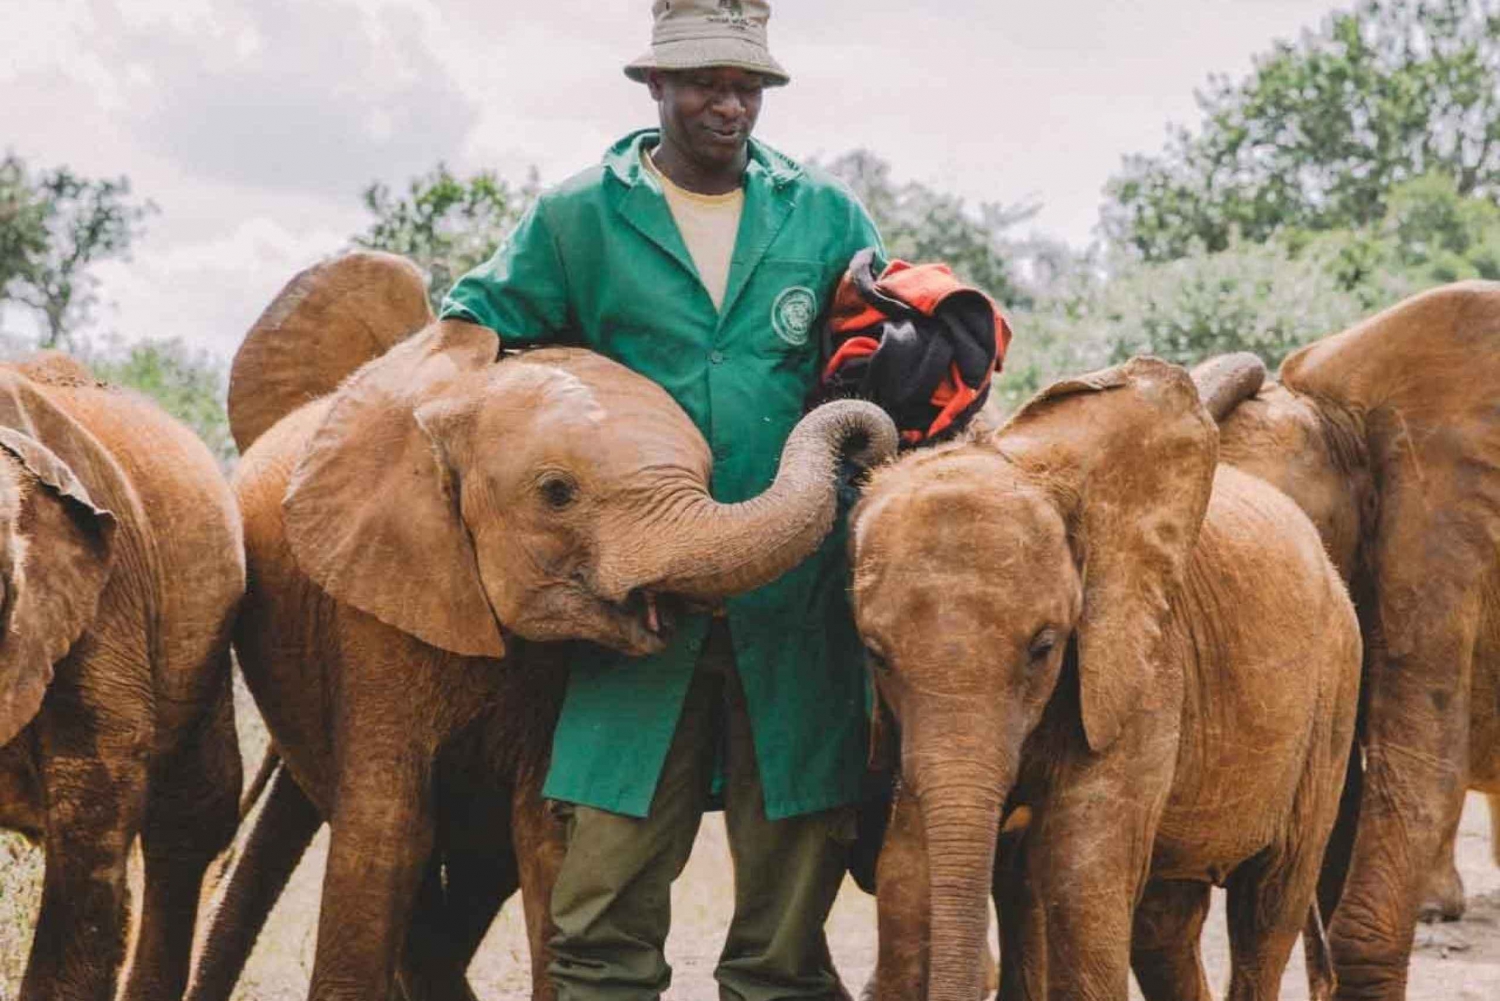 Nairobi: Dagstur med elefantbarnhem, giraff och bomas